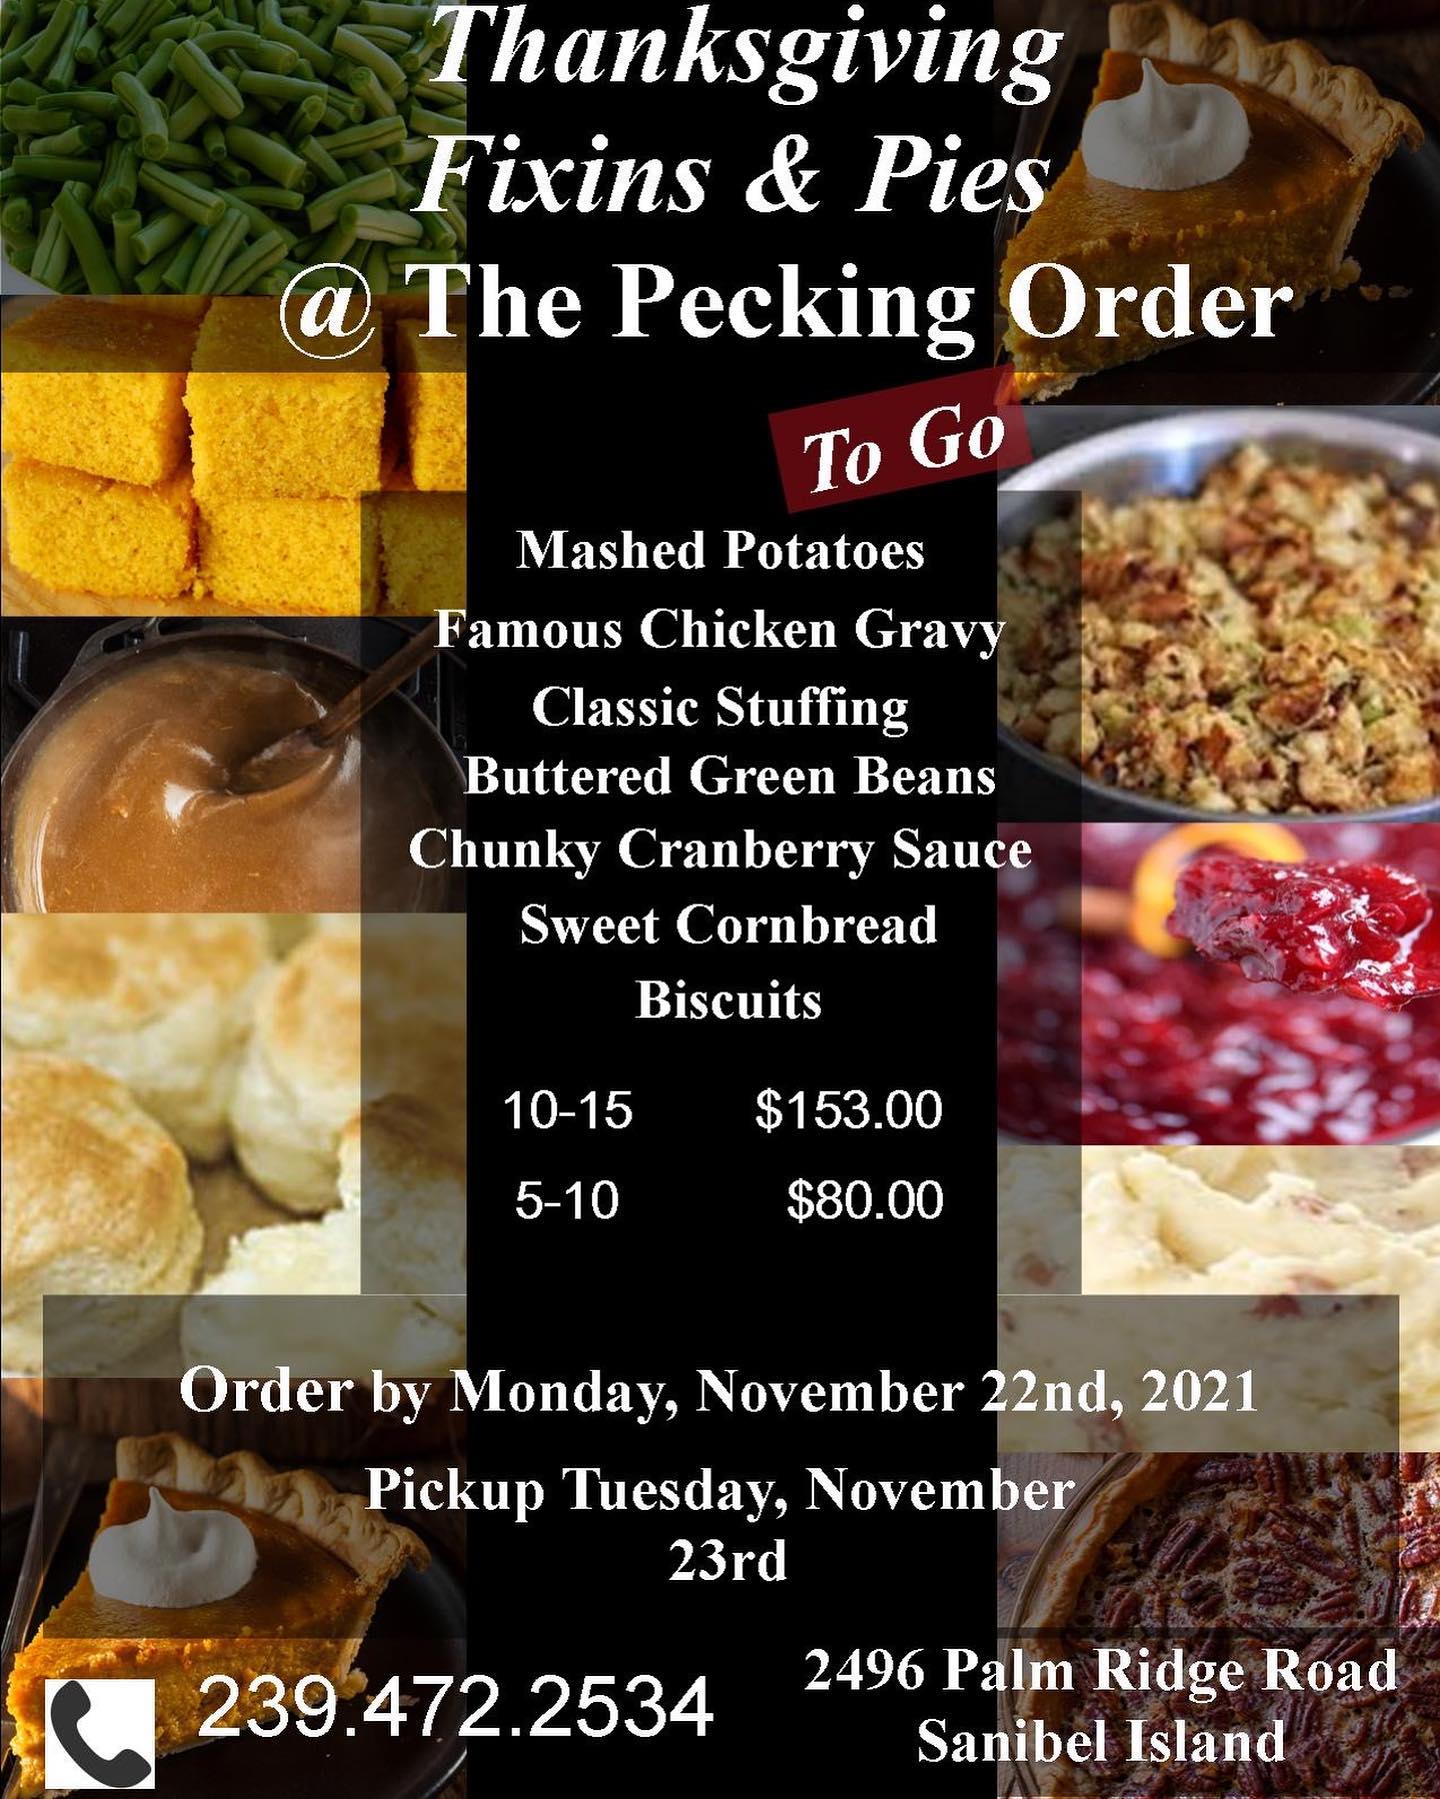 Pecking Order Sanibel Thanksgiving 